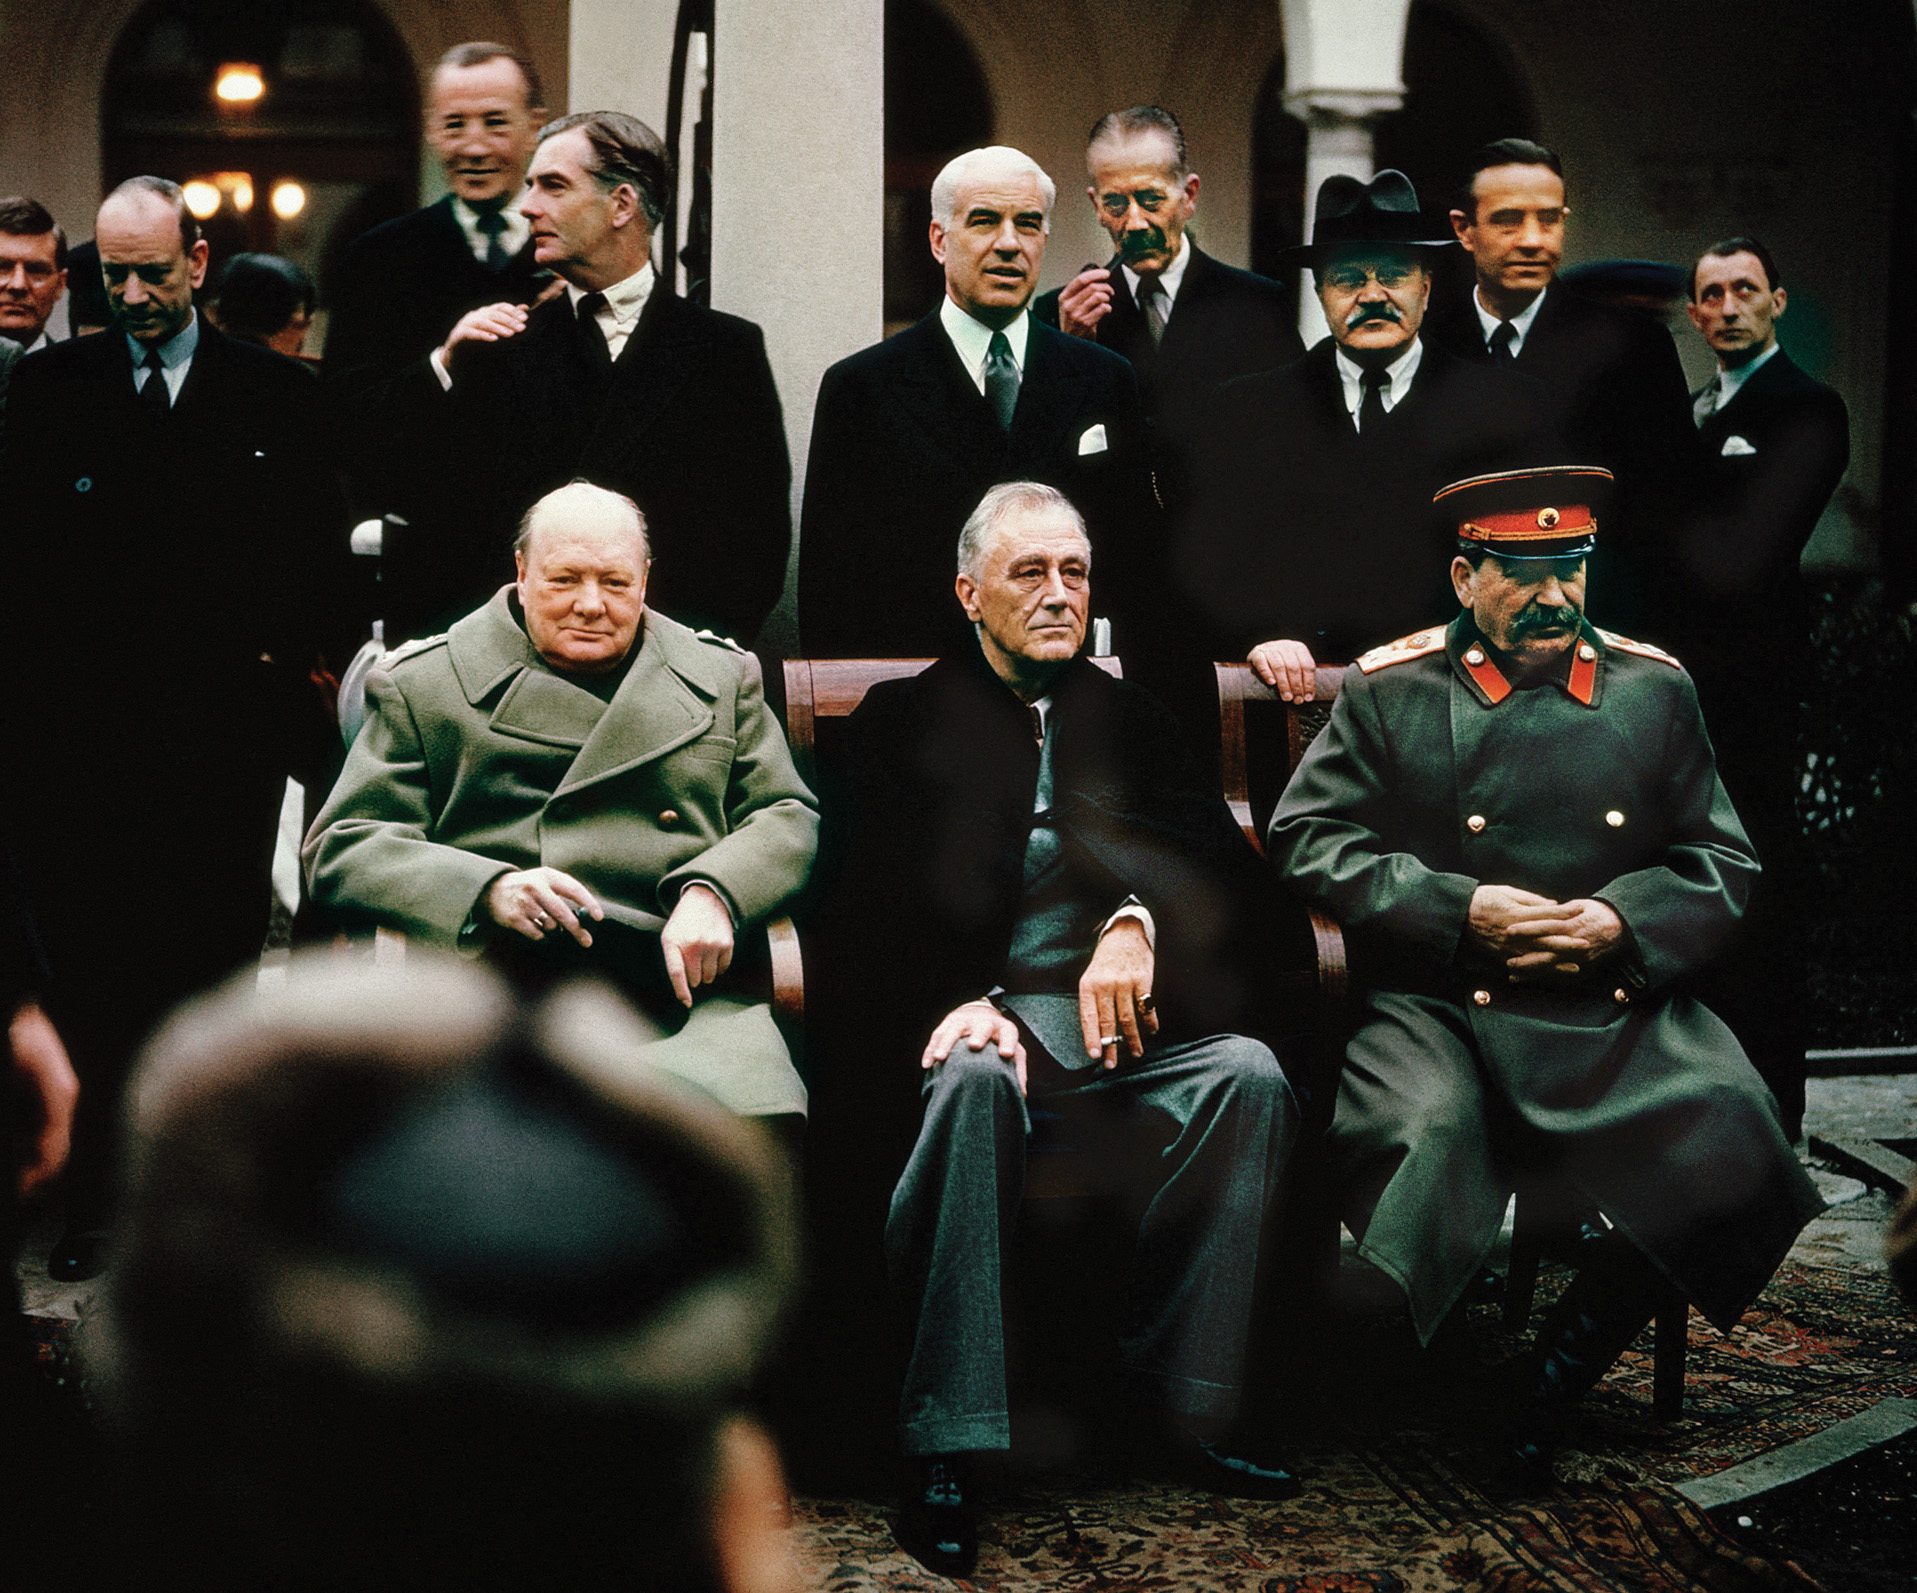 雅尔塔会议期间，三位领导人与顾问在一起。丘吉尔和斯大林之间的关系有时很暴躁，但两位领导人设法维持了联盟，最终打败了纳粹德国和日本帝国。